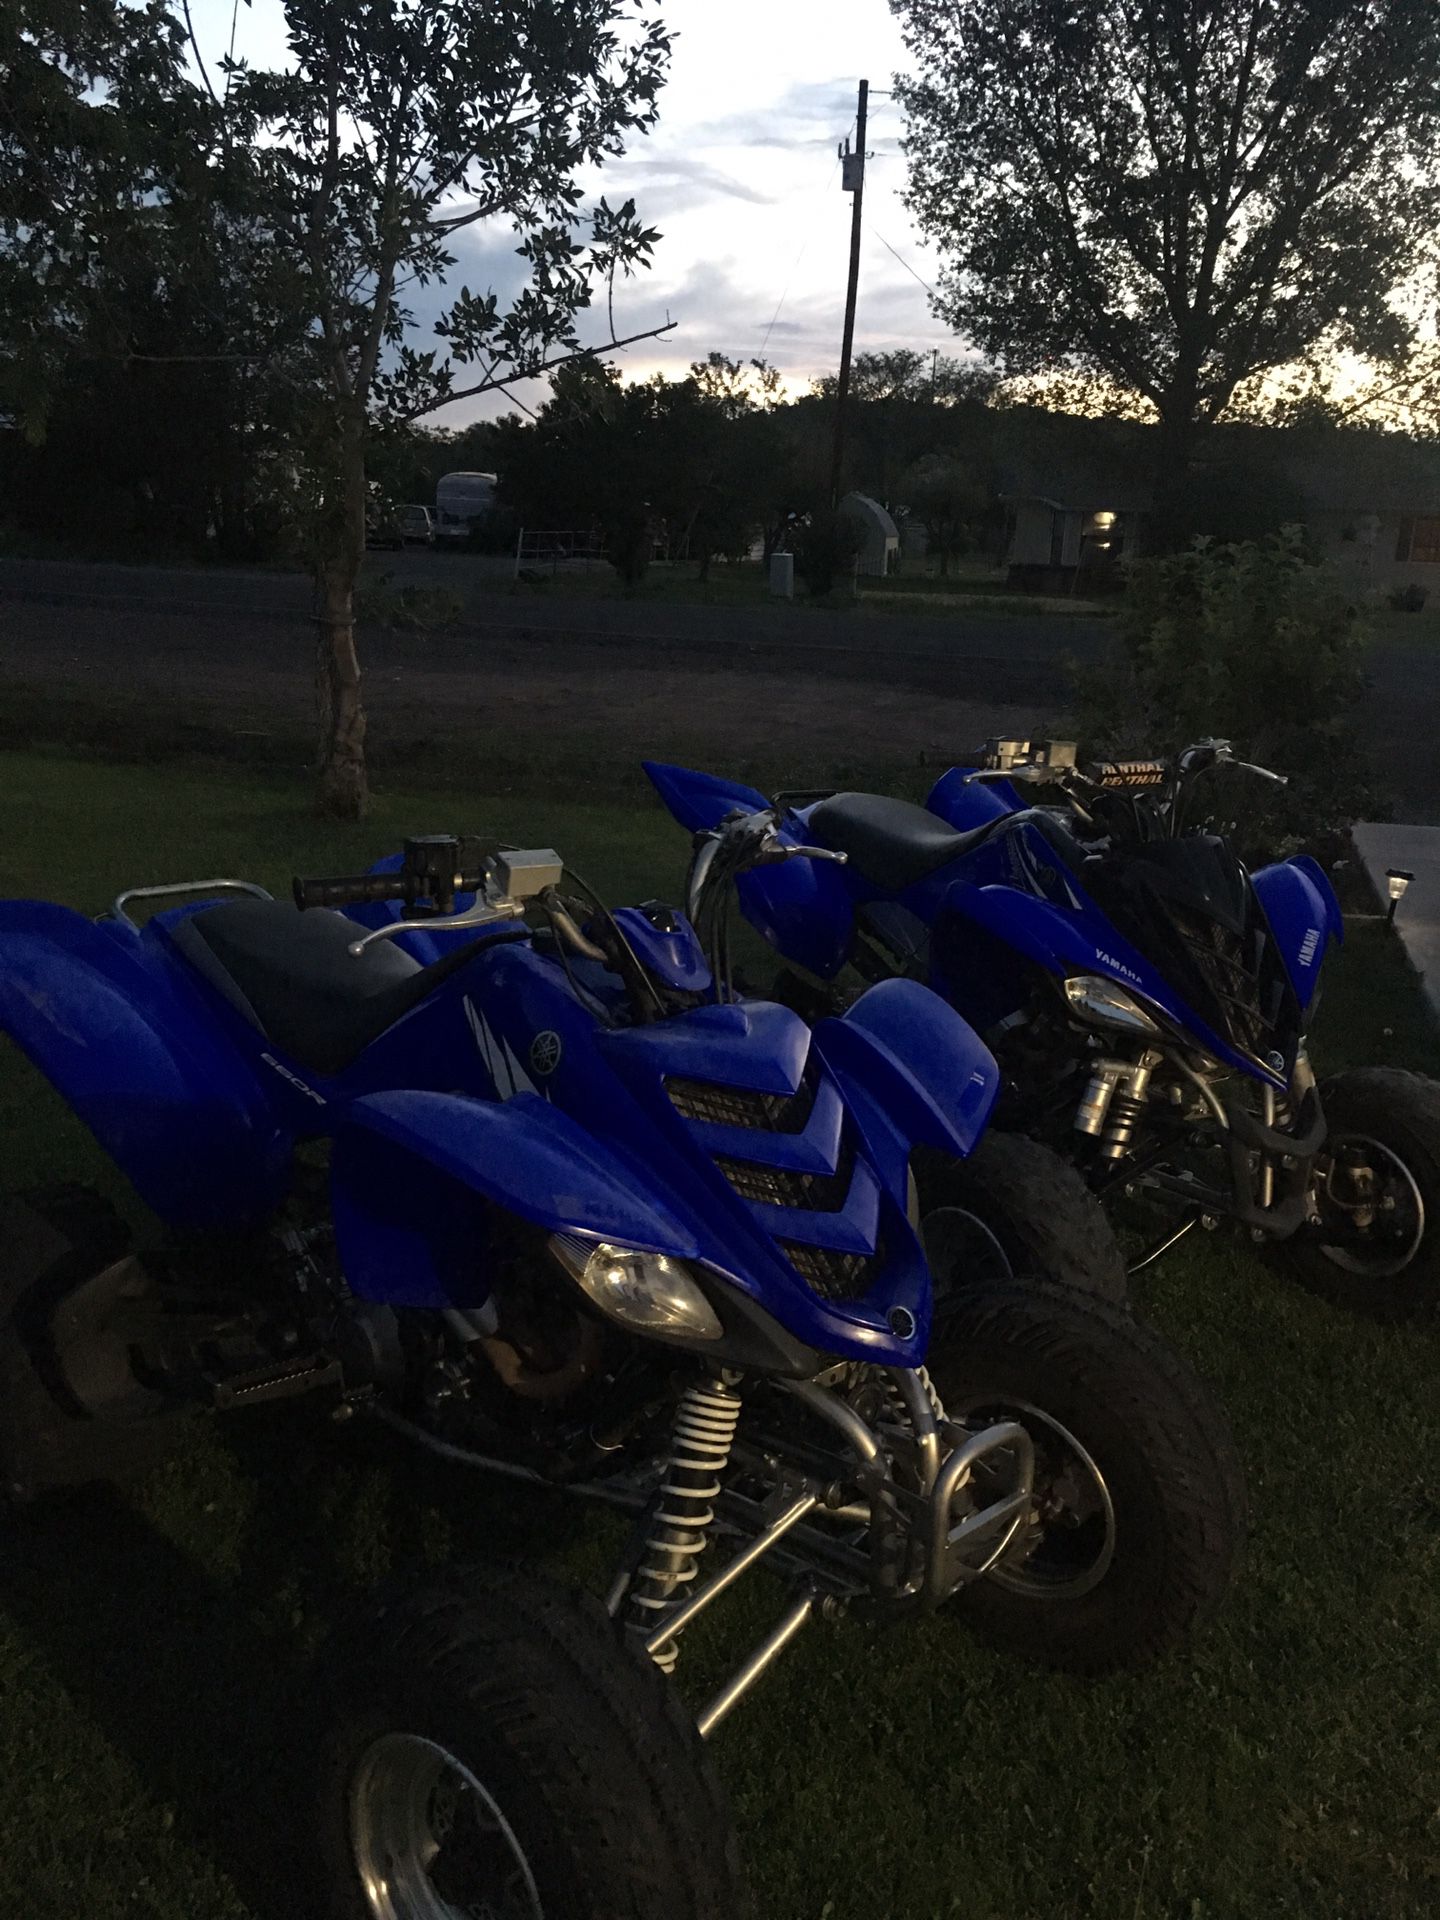 Yamaha raptors 700R and 660 R